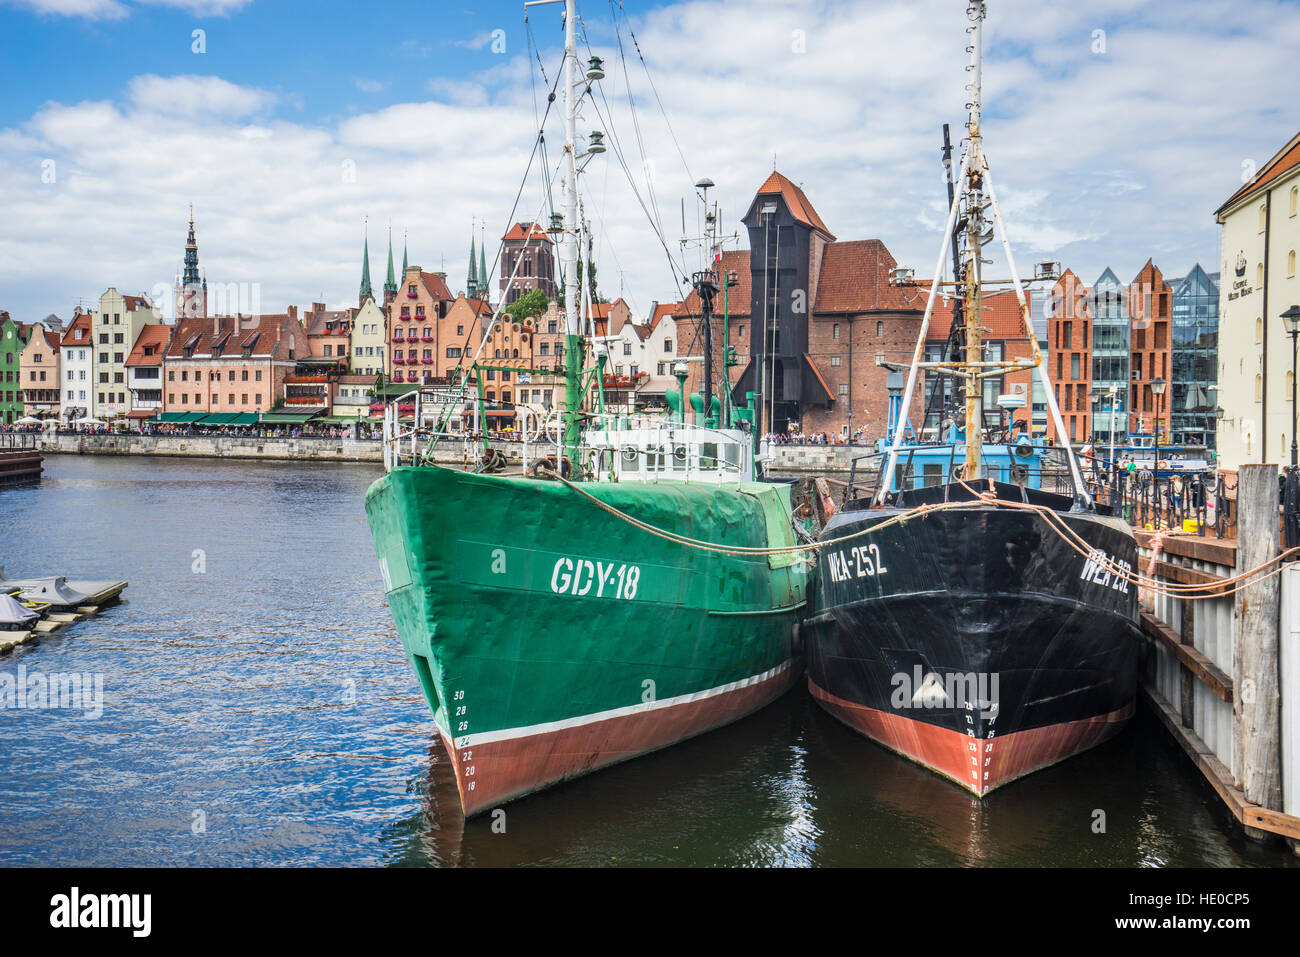 La Pologne, la Poméranie, Gdansk (Dantzig), vue de la grue du port médiéval emblématique (Krantor/Brama Zuraw) Oliwianka Bleihof (île de) Banque D'Images